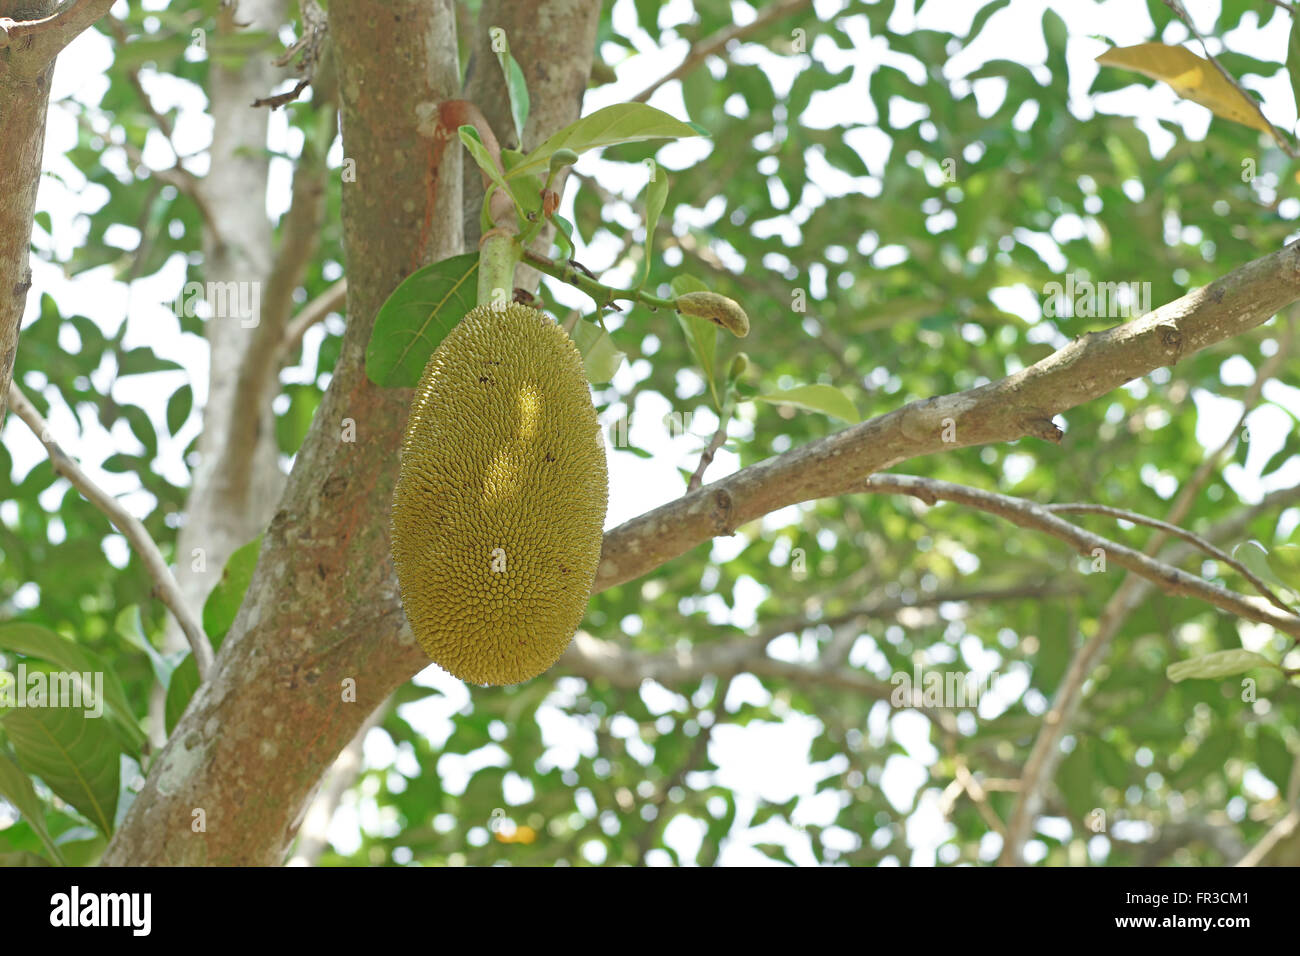 young jackfruit on jackfruit tree Stock Photo